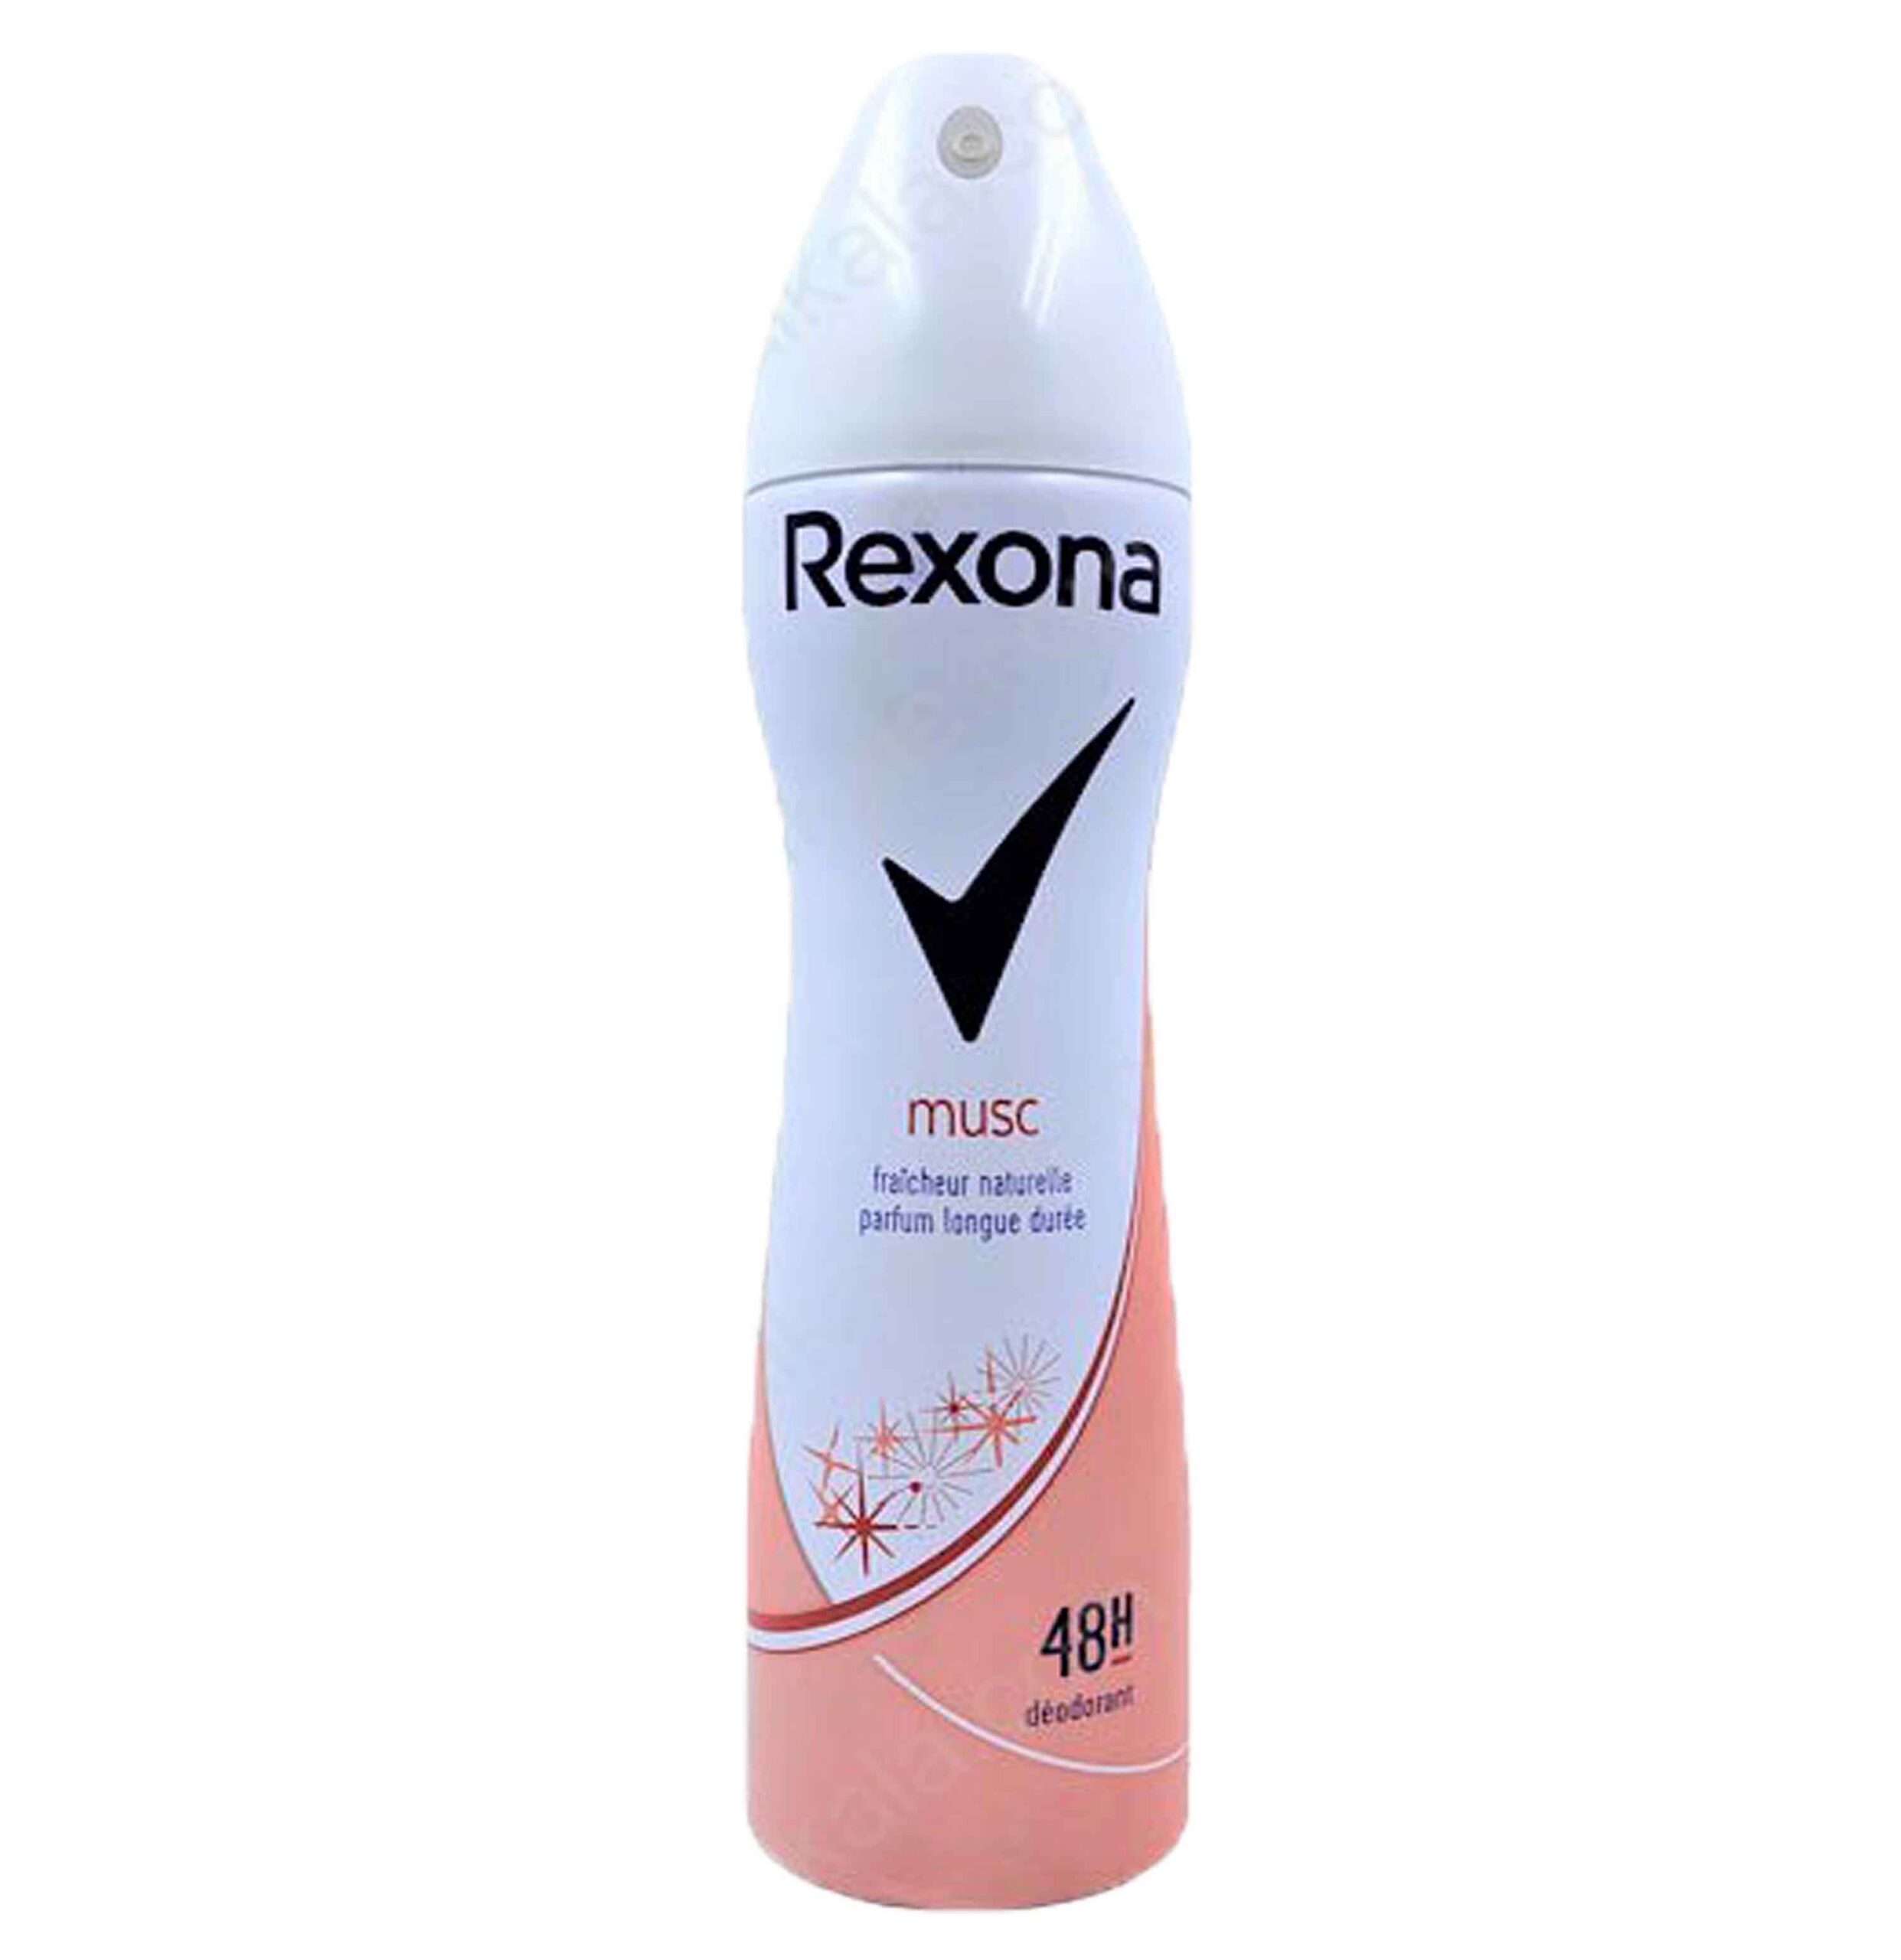 اسپری رکسونا زنانه مدل ماسک Rexona Musc  حجم 200 میل-فروشگاه اینترنتی آرایشی بهداشتی آزارو